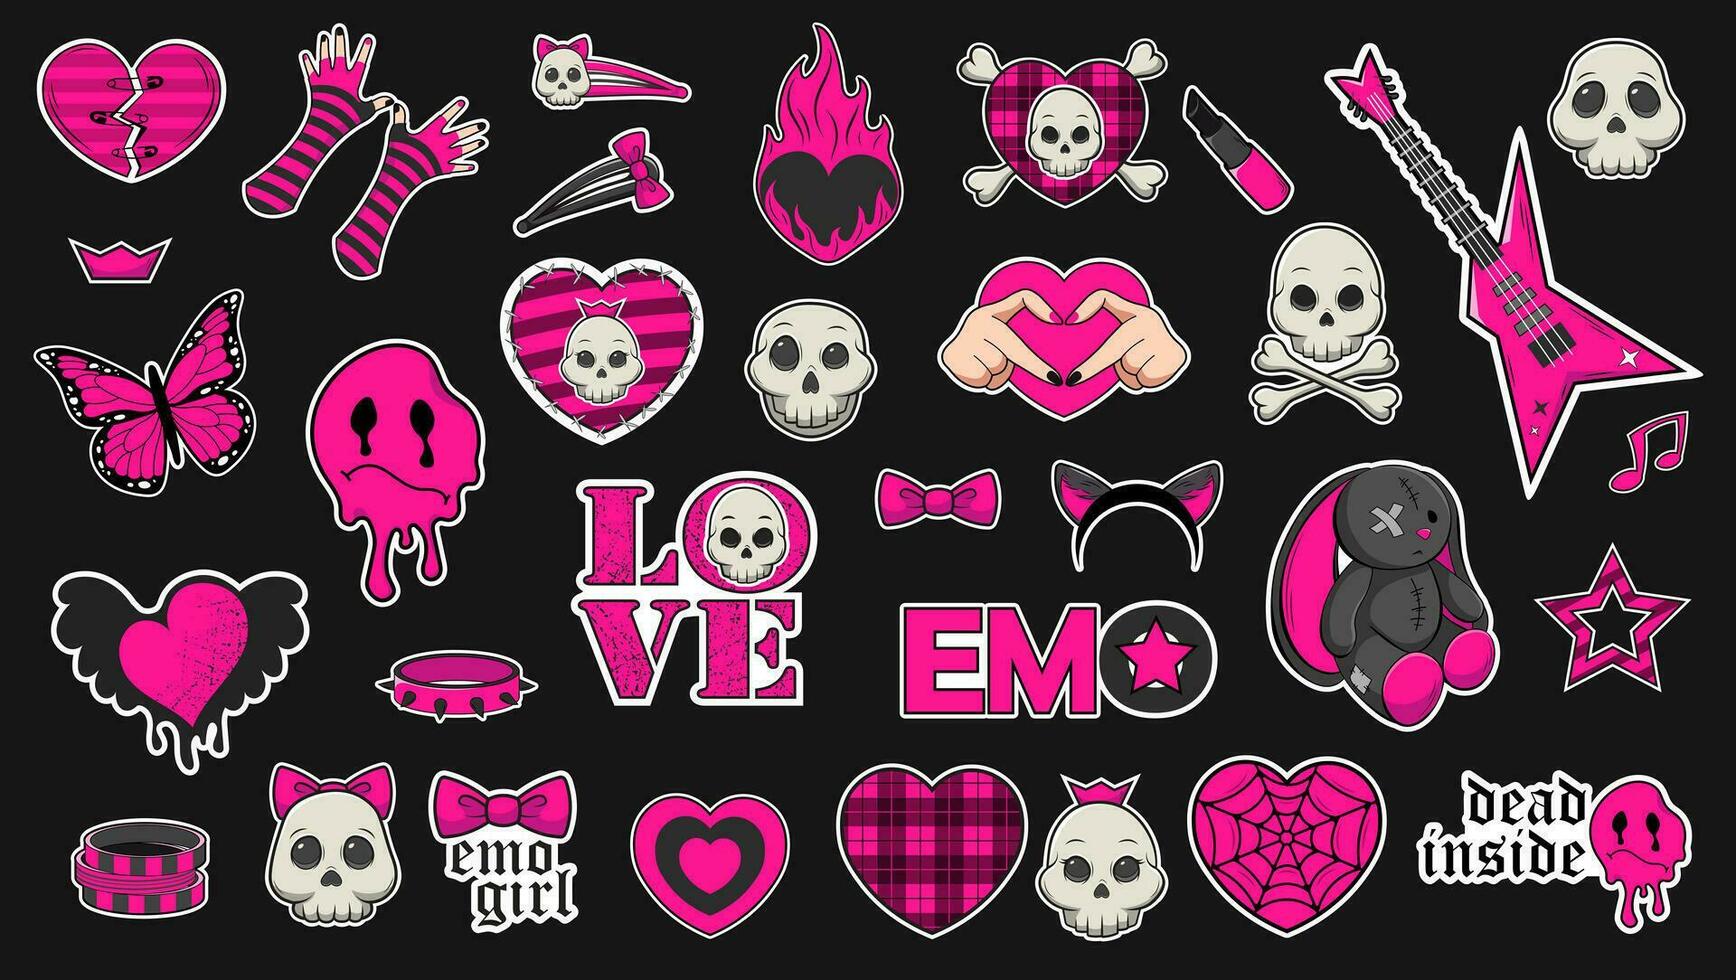 uppsättning av trendig emo klistermärken i svart och syra rosa färger. emo attribut, skallar, ledsen uttryckssymboler, hjärtan med mönster, spel trösta med spel över, Kläder föremål-01 vektor